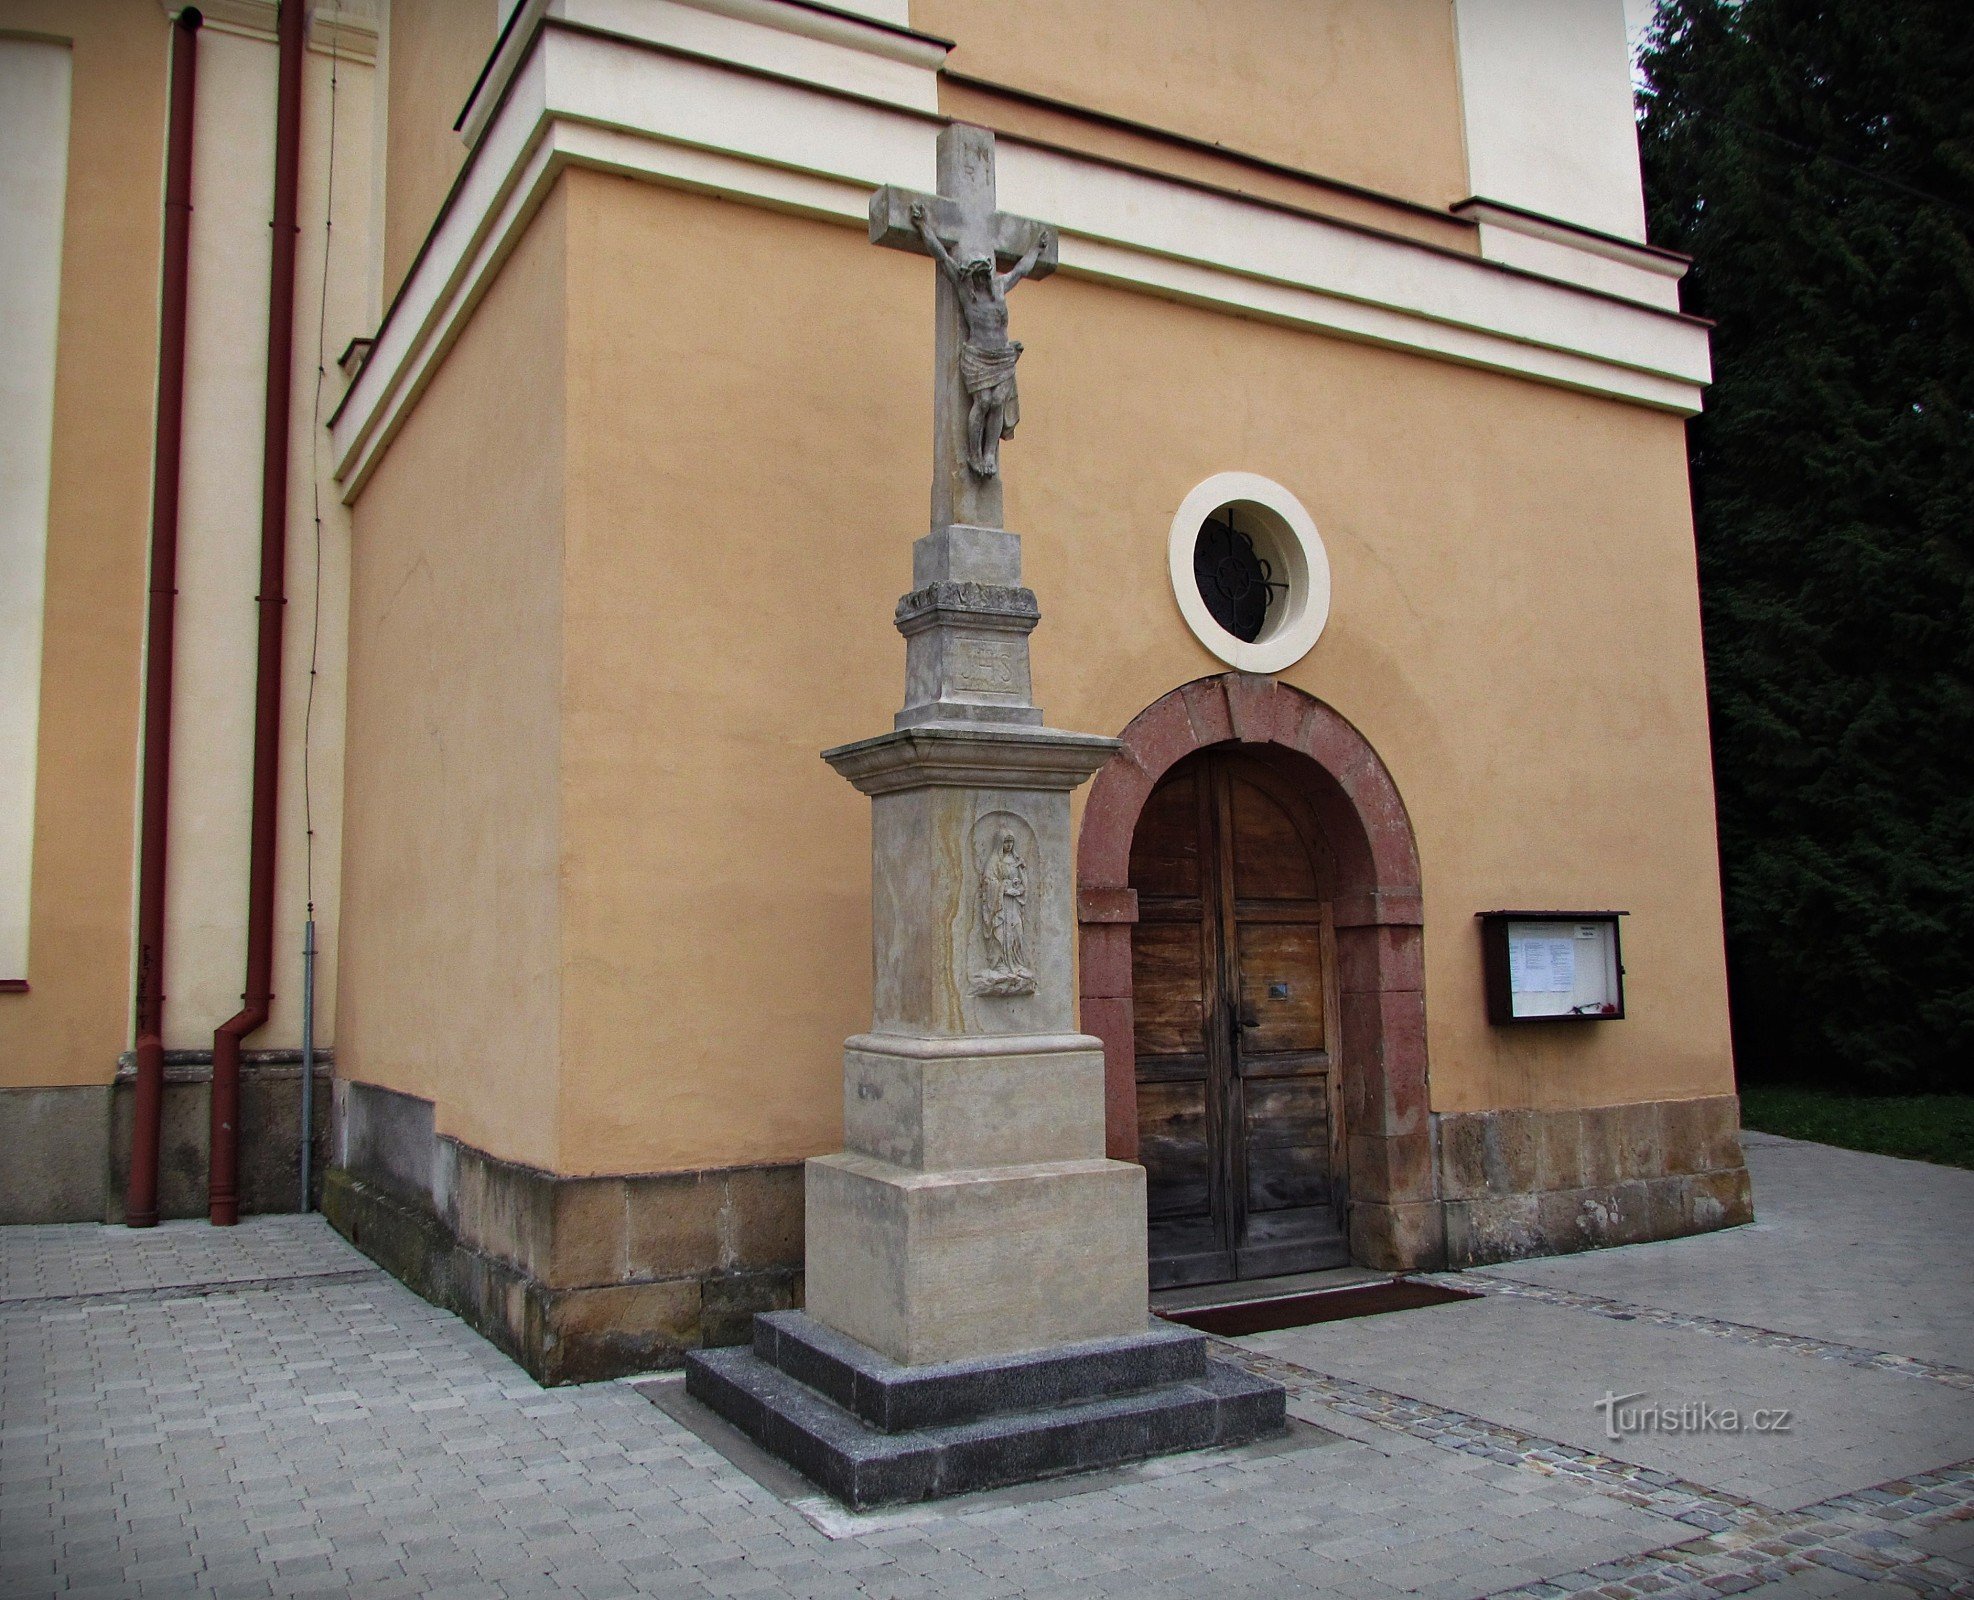 Zlín - Szent Miklós templom Malenovice-ben